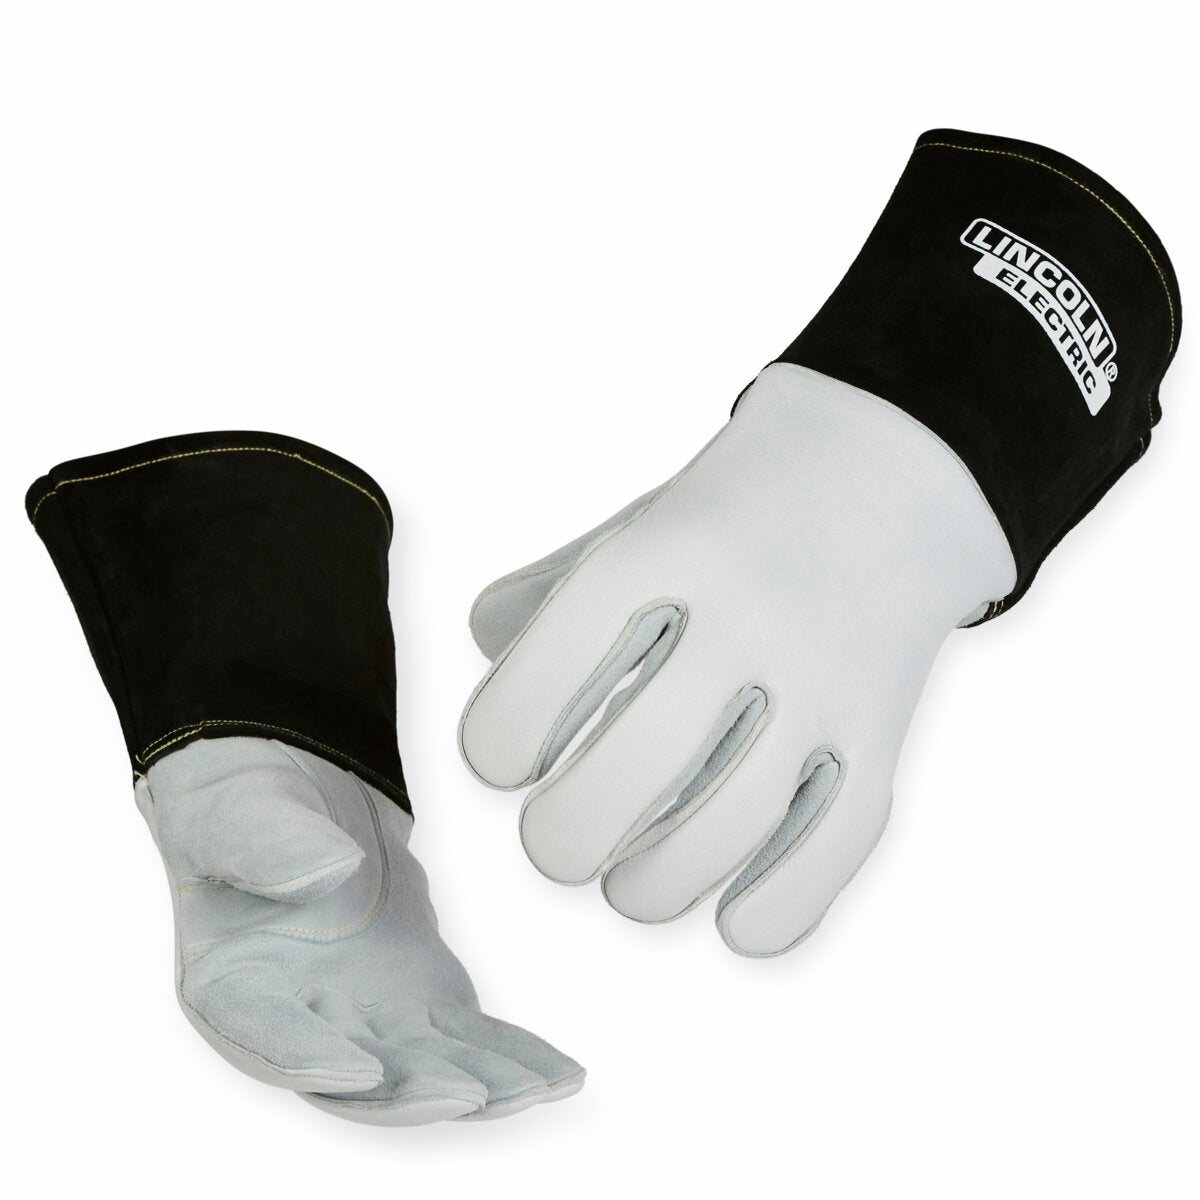 Premium 7 Series Elkskin Stick/MIG Welding Gloves - Medium